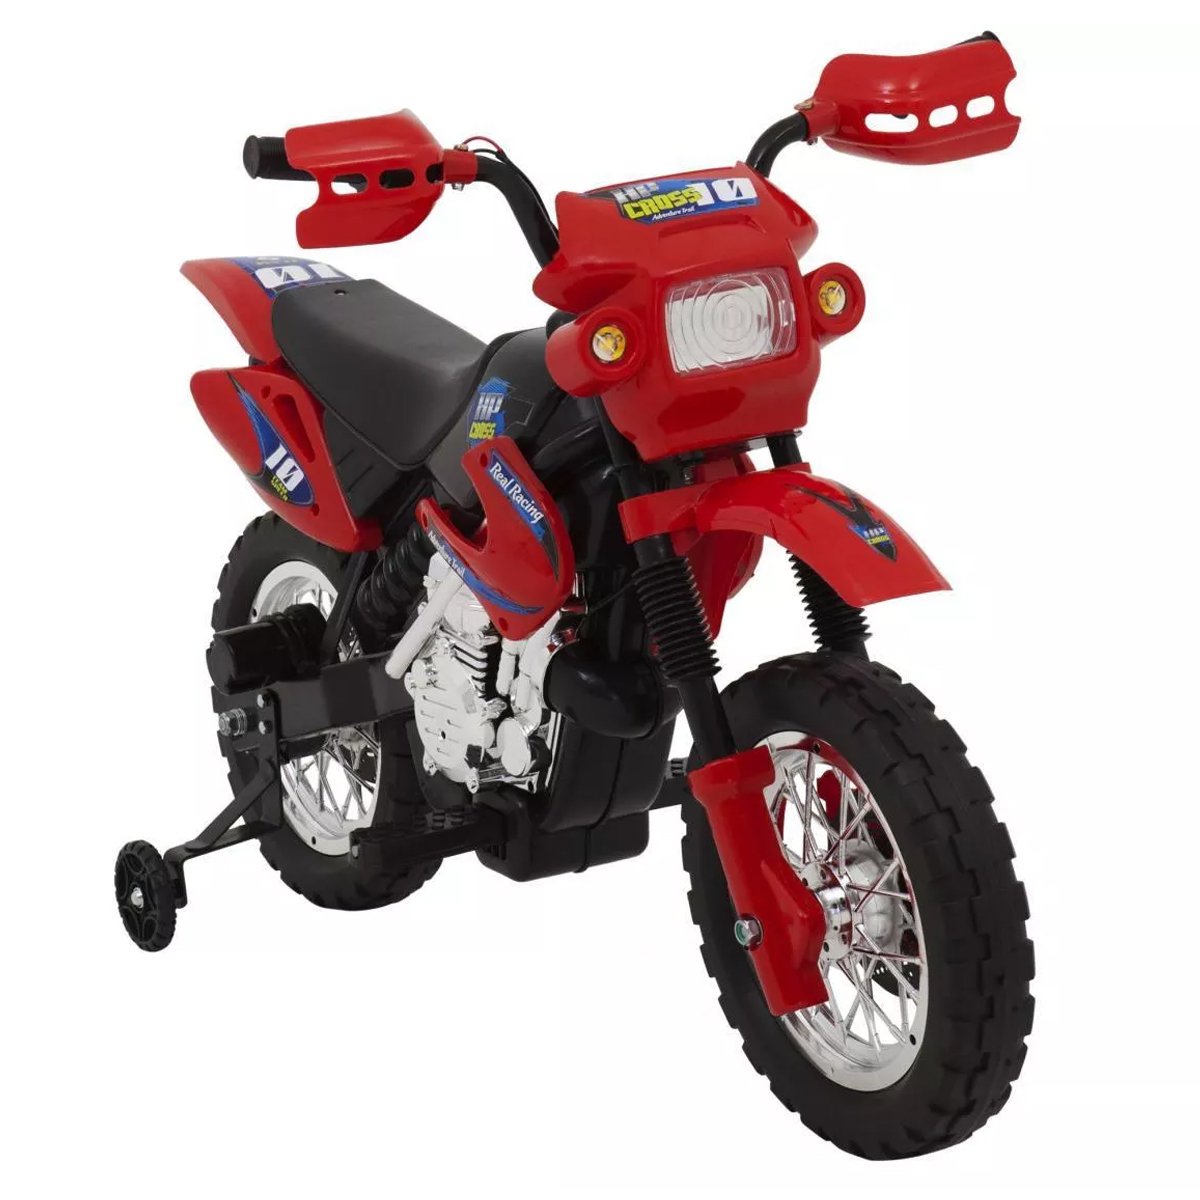 Motocicleta elétrica infantil, moto de bebê, brinquedos de garrafa